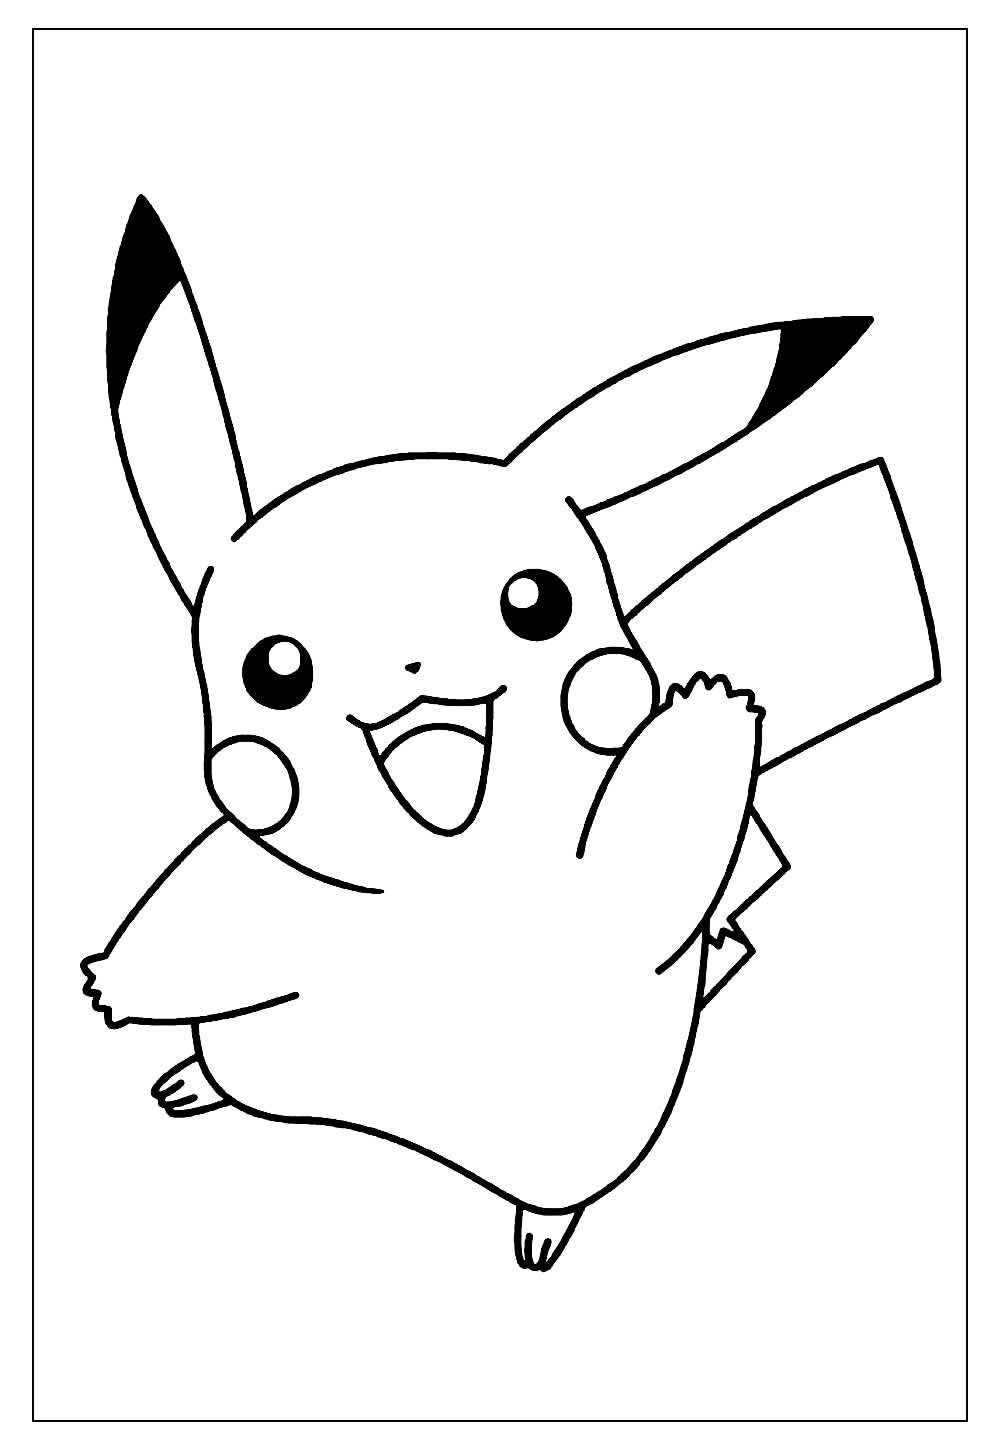 Desenhos do Pikachu para imprimir e colorir  Pikachu pikachu, Tatuagem  pikachu, Arte com o pikachu